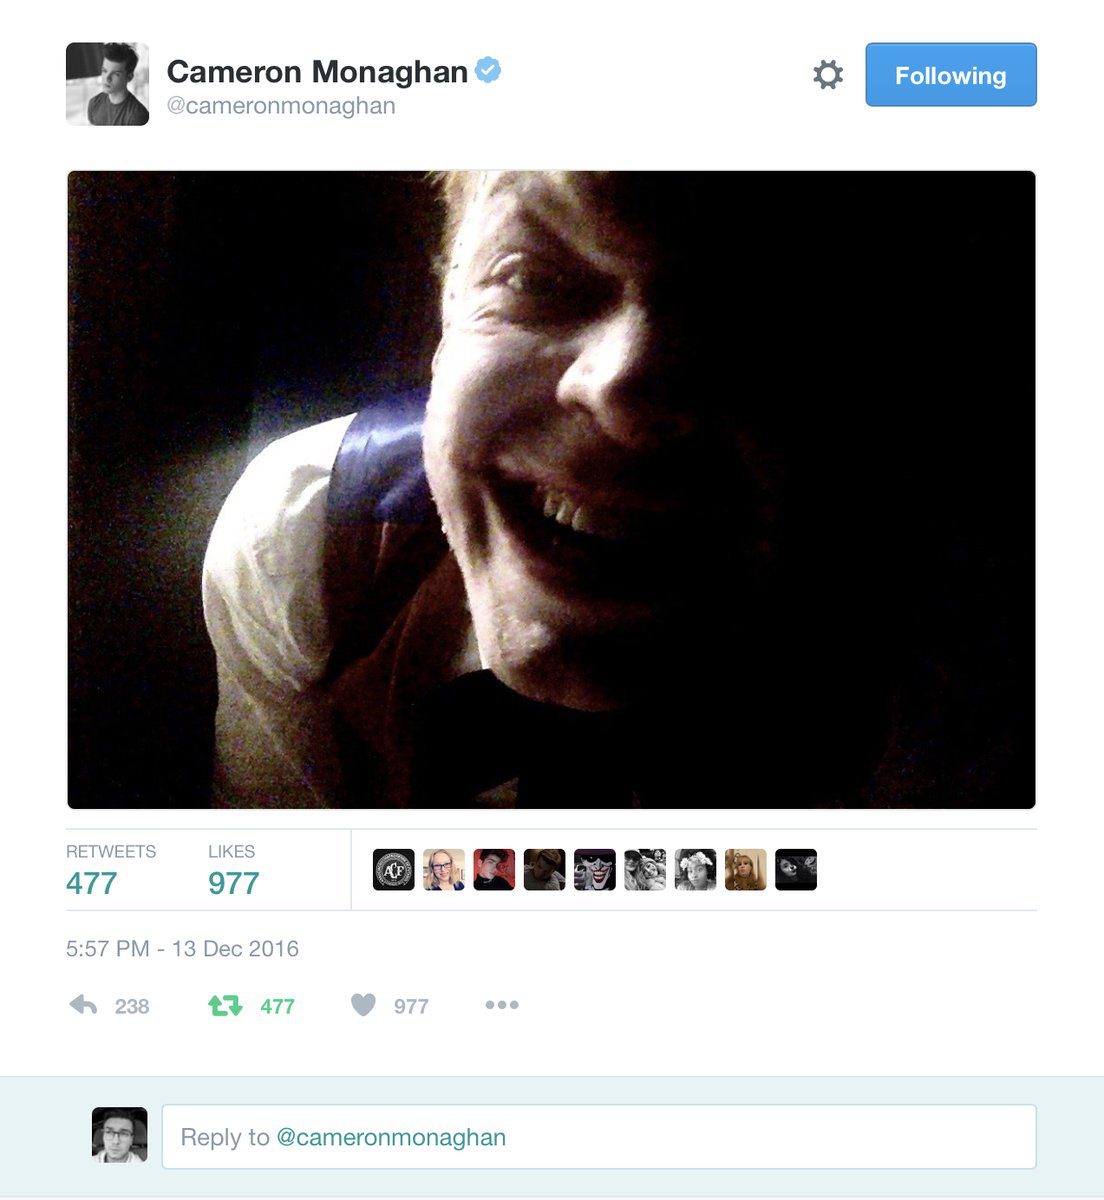 Captura del tweet publicado por Cameron Monaghan